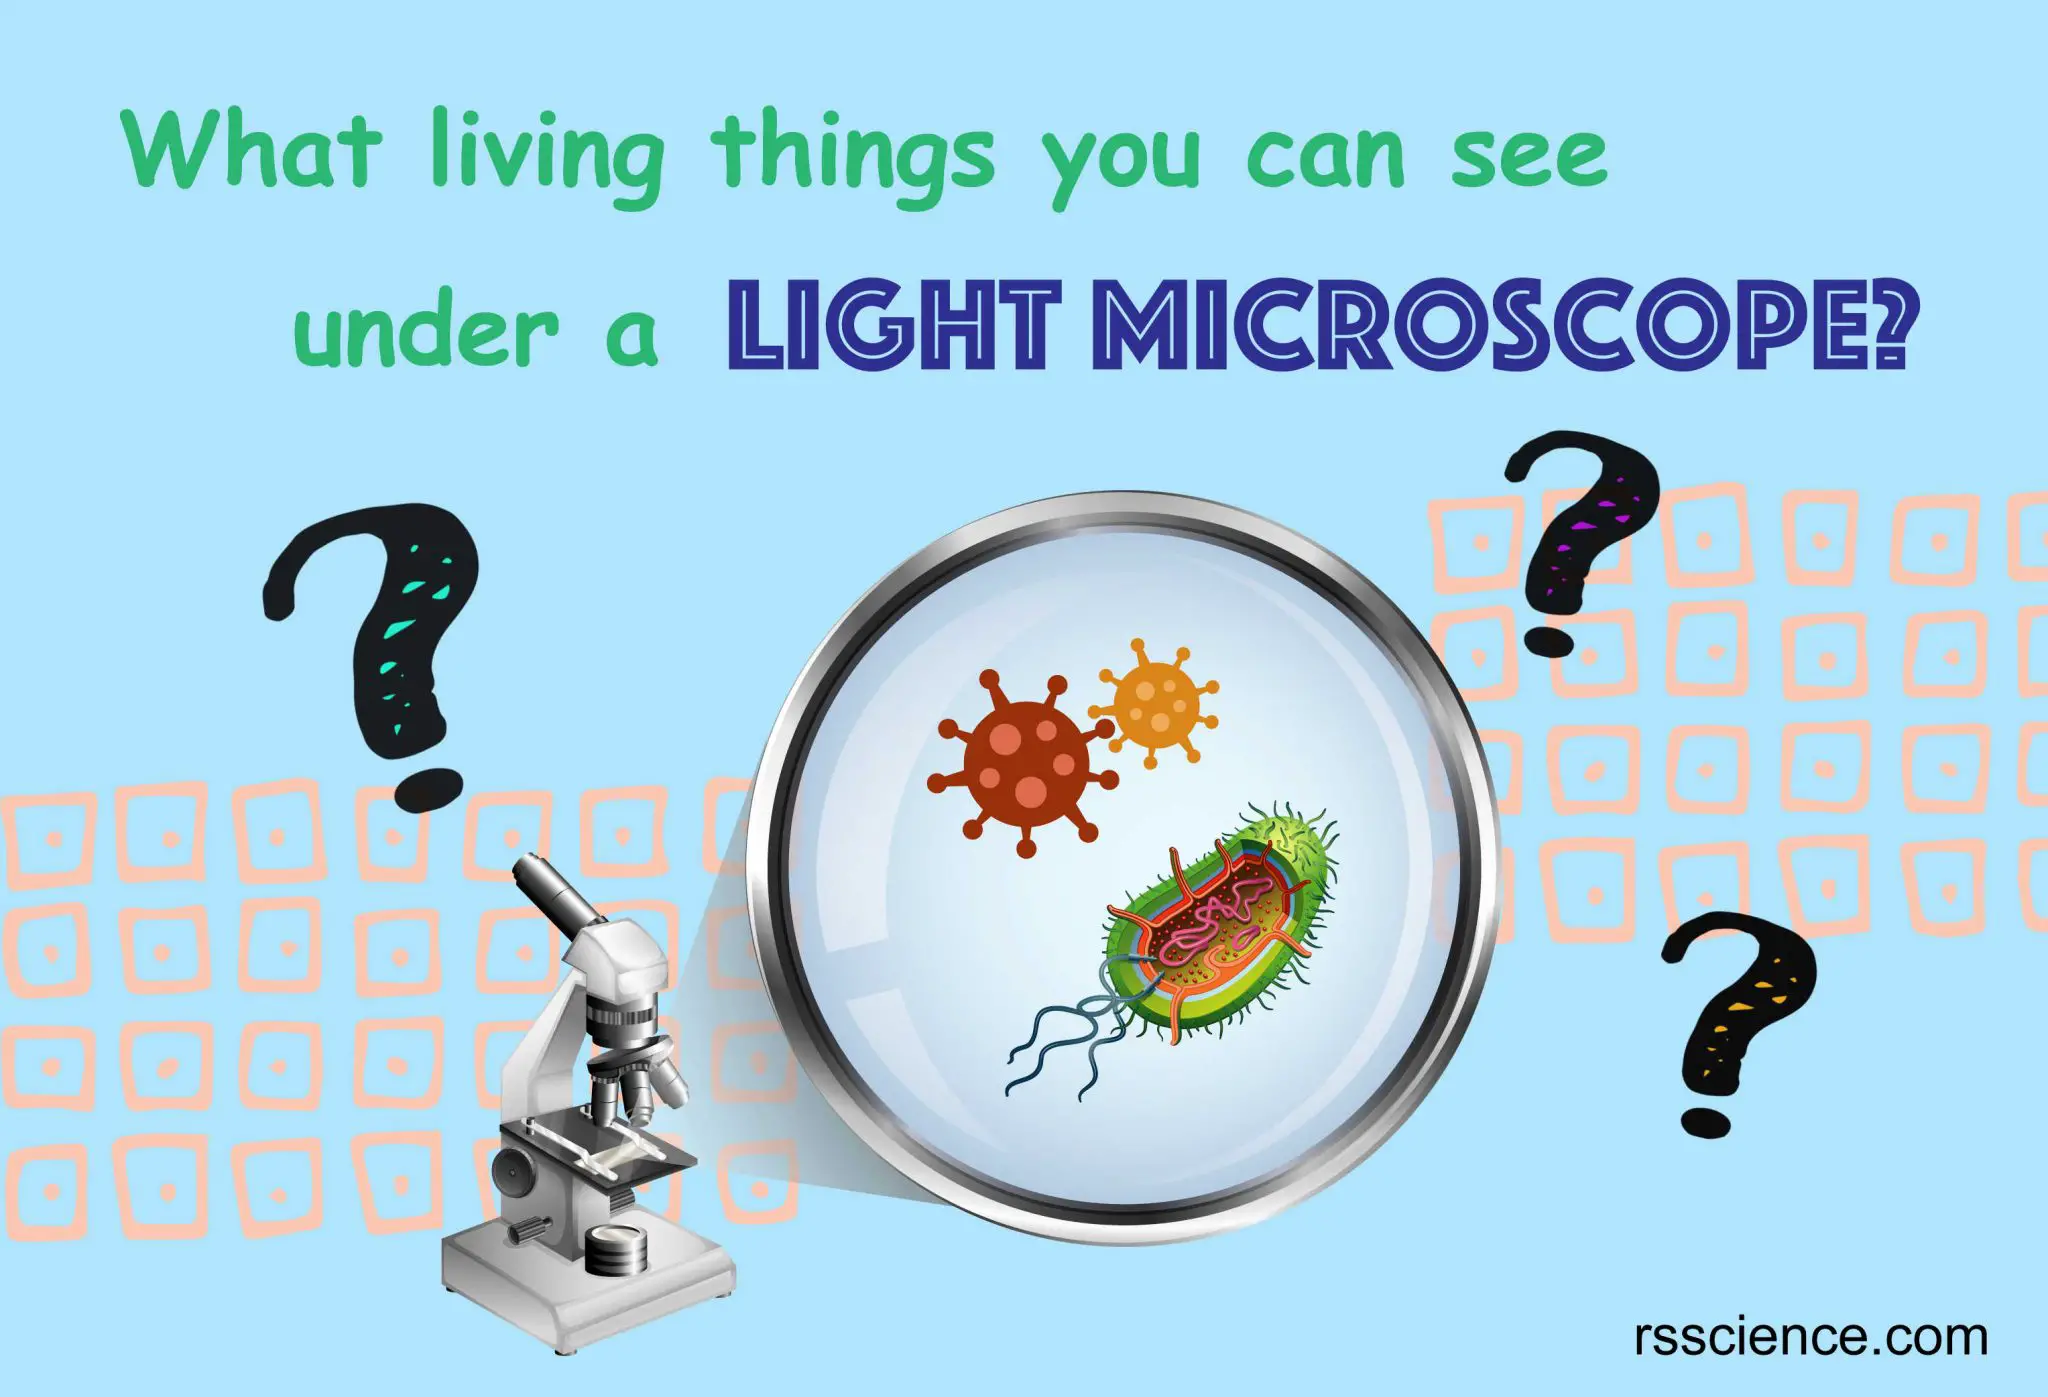 在光学显微镜下你能看到什么生物